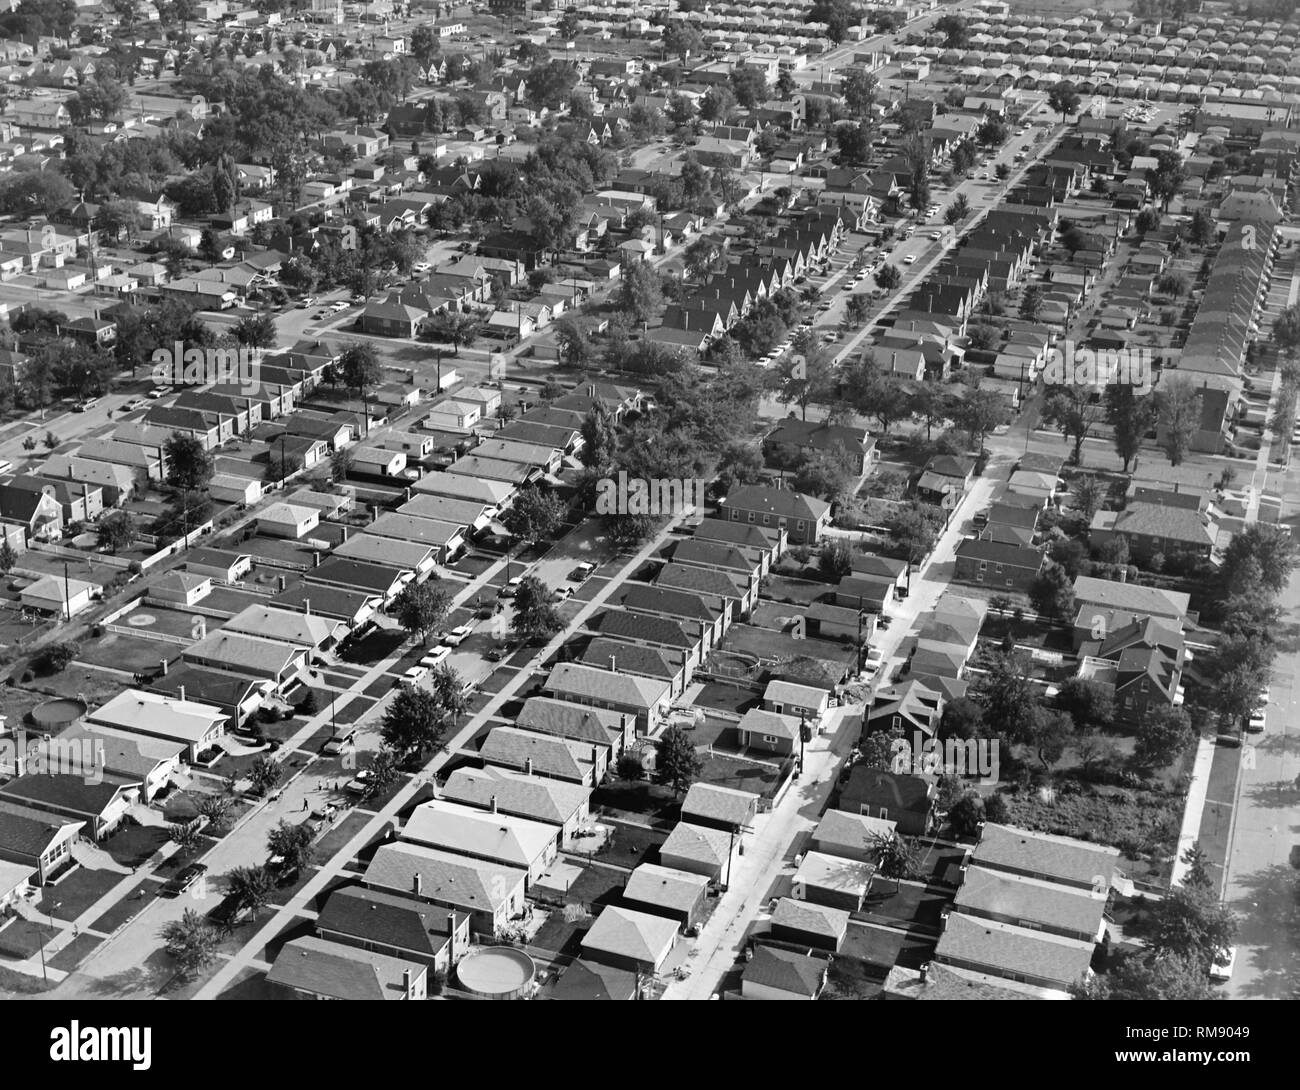 Vue aérienne de bungalows sur le SW Side de Chicago à proximité de l'aéroport de Midway, ca. 1964. Banque D'Images